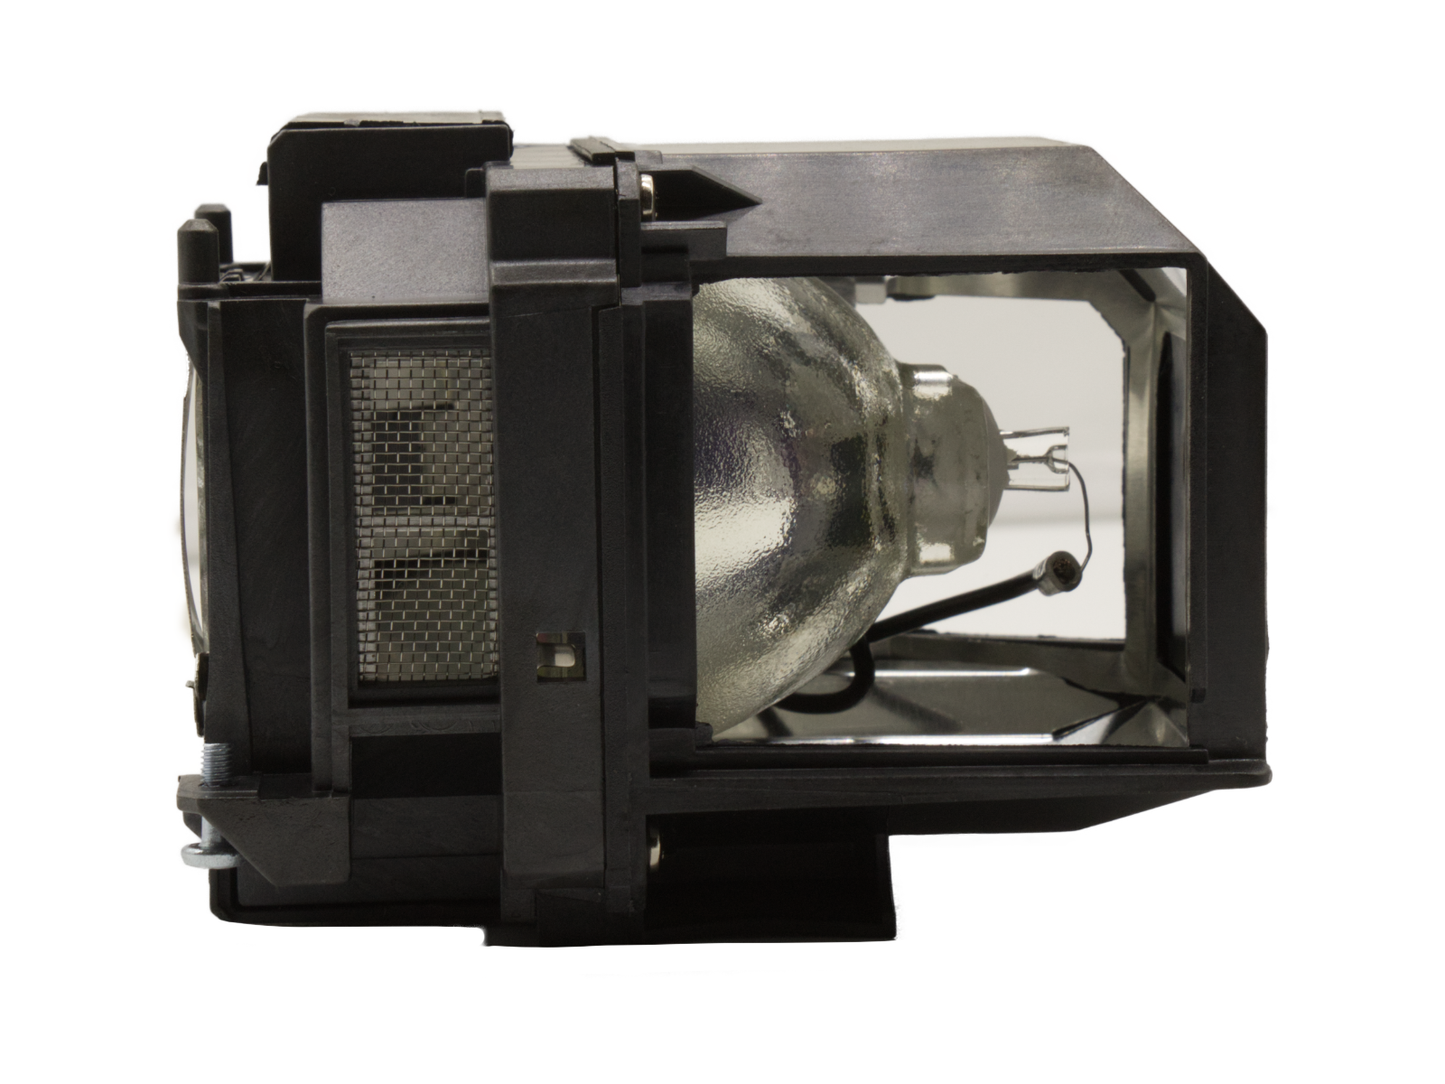 azurano Beamerlampe für EPSON ELPLP96 mit Gehäuse für EPSON Beamer Projektoren EH-, EB-, EX-, VS-, PowerLite- & HomeCinema-Serie, Ersatzlampe mit Gehäuse, 245W - Bild 6